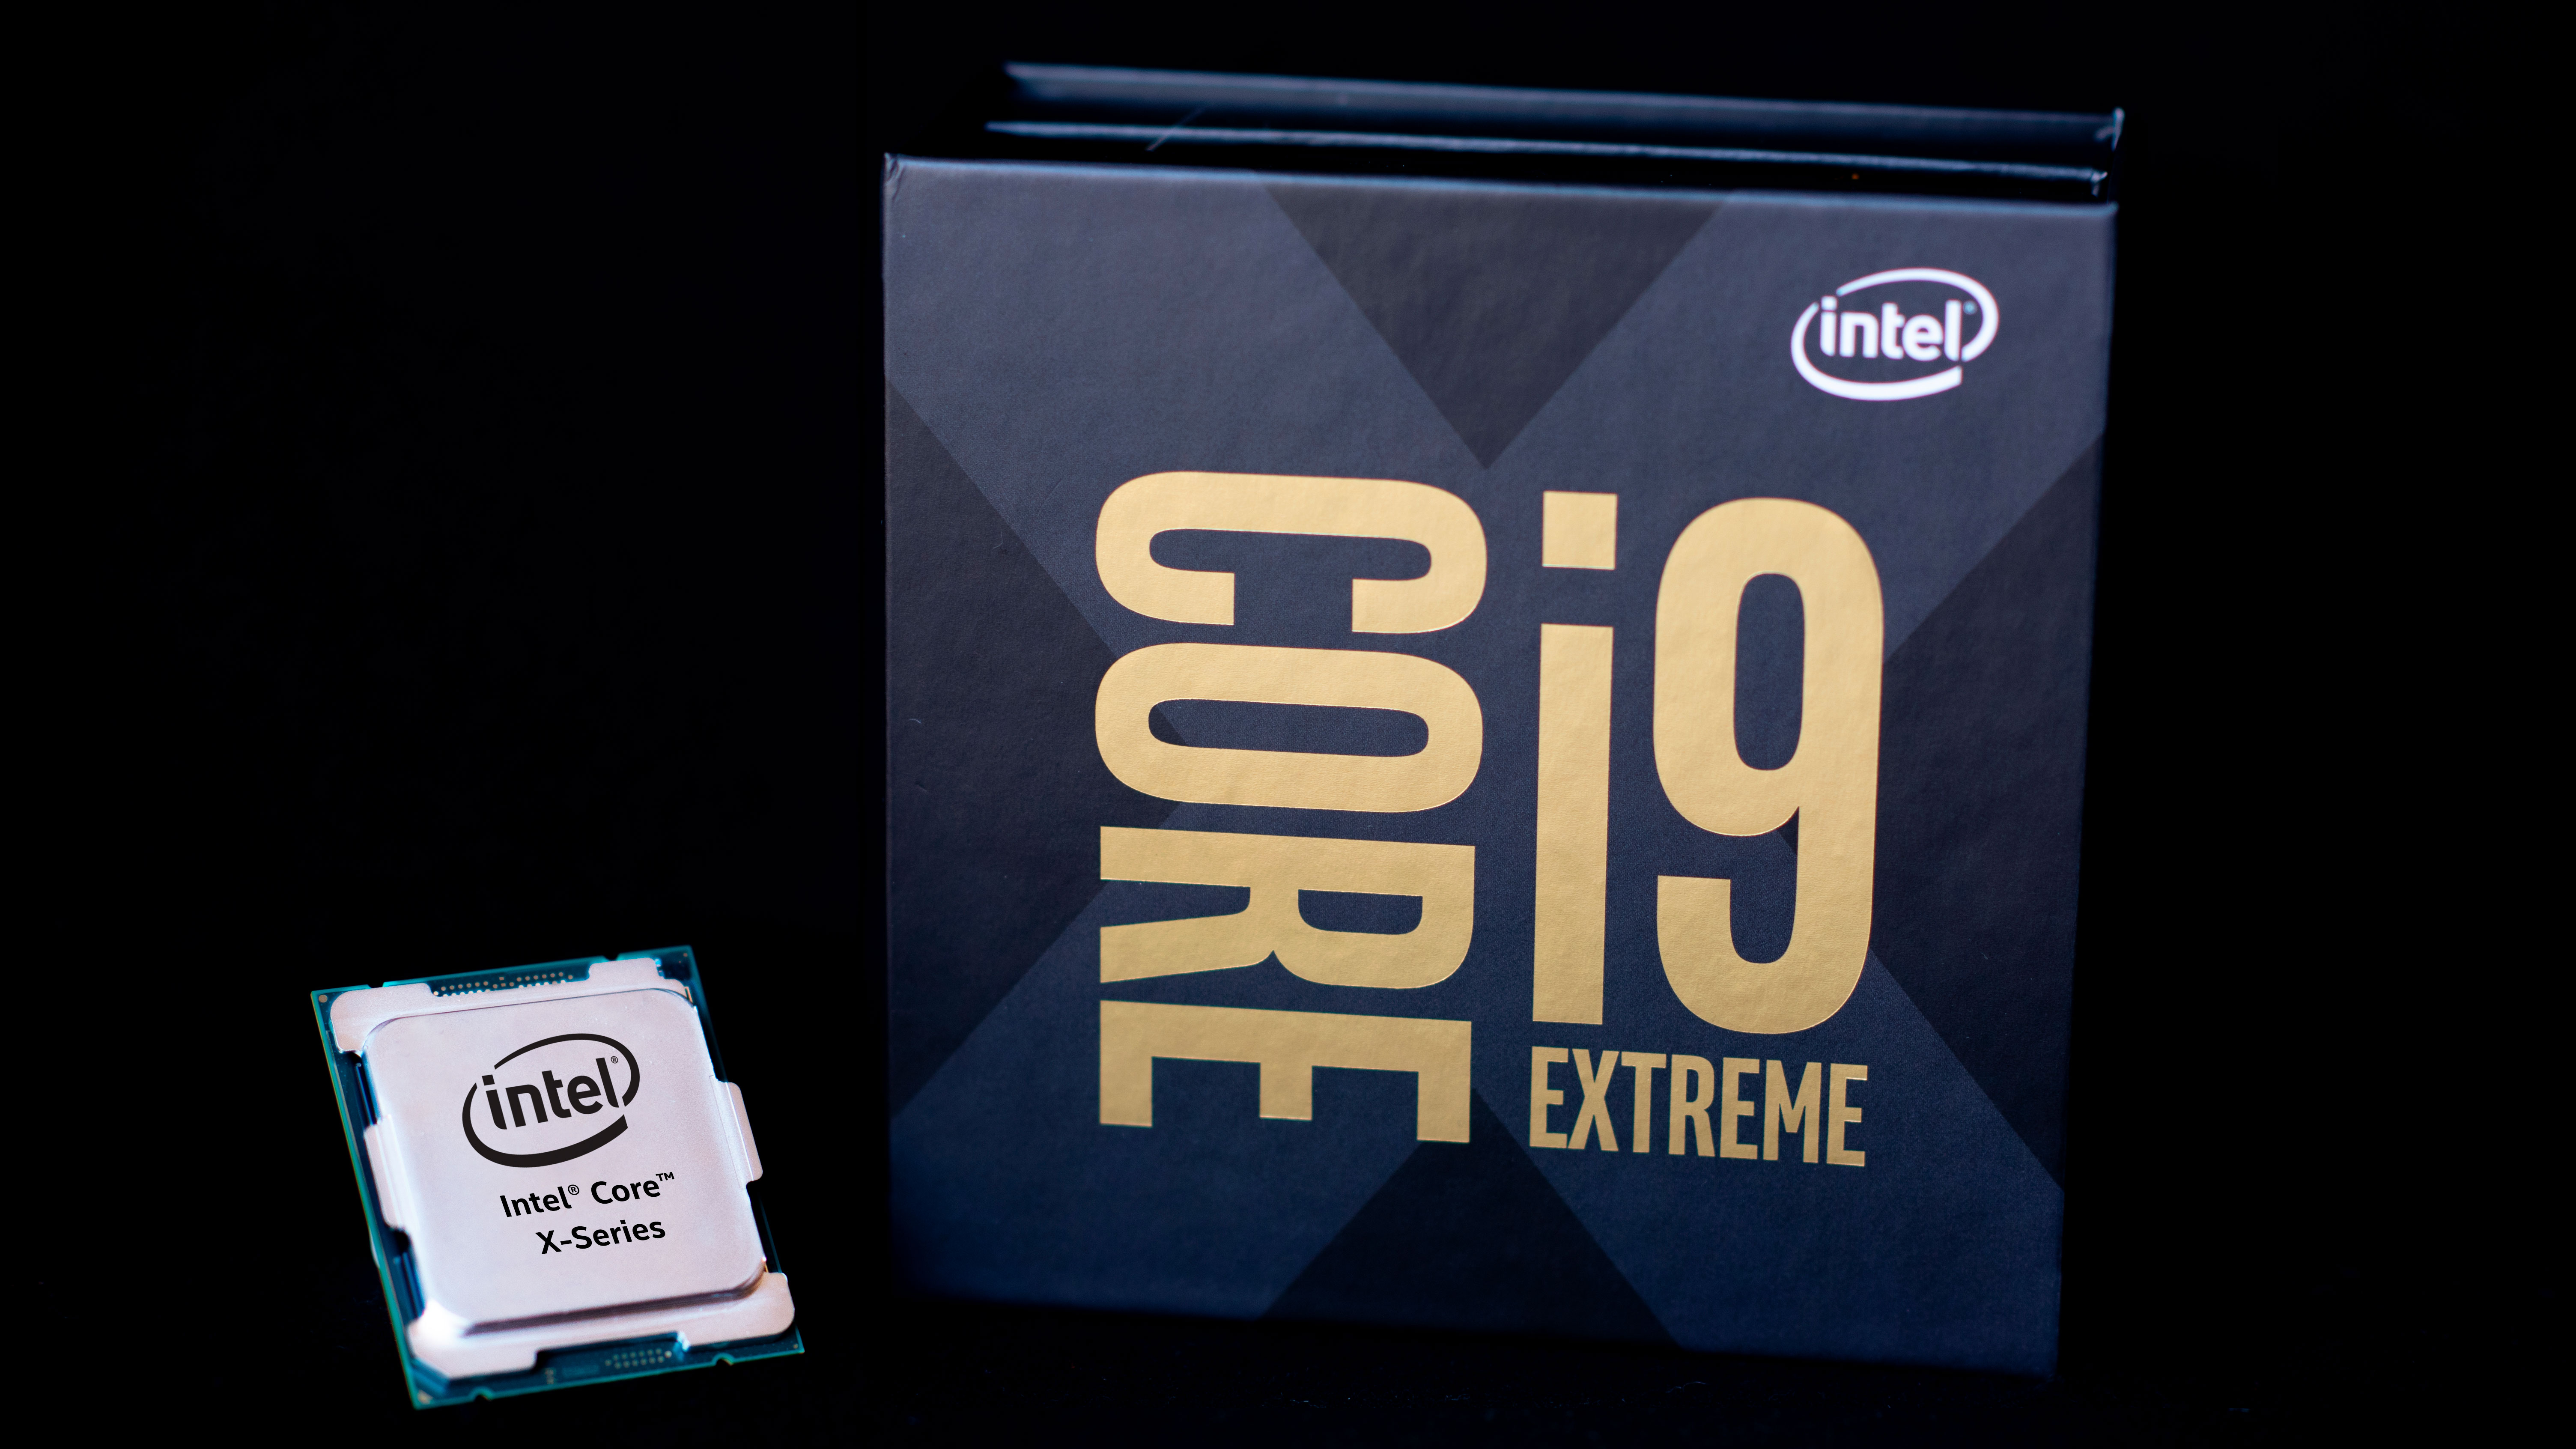 Core i9 10980xe. Процессор Intel Core i9. Процессор Intel Core i9-10980xe Box. Процессор Intel Core i9-10980xe extreme Edition. Intel Core i9 extreme x-Series Edition.